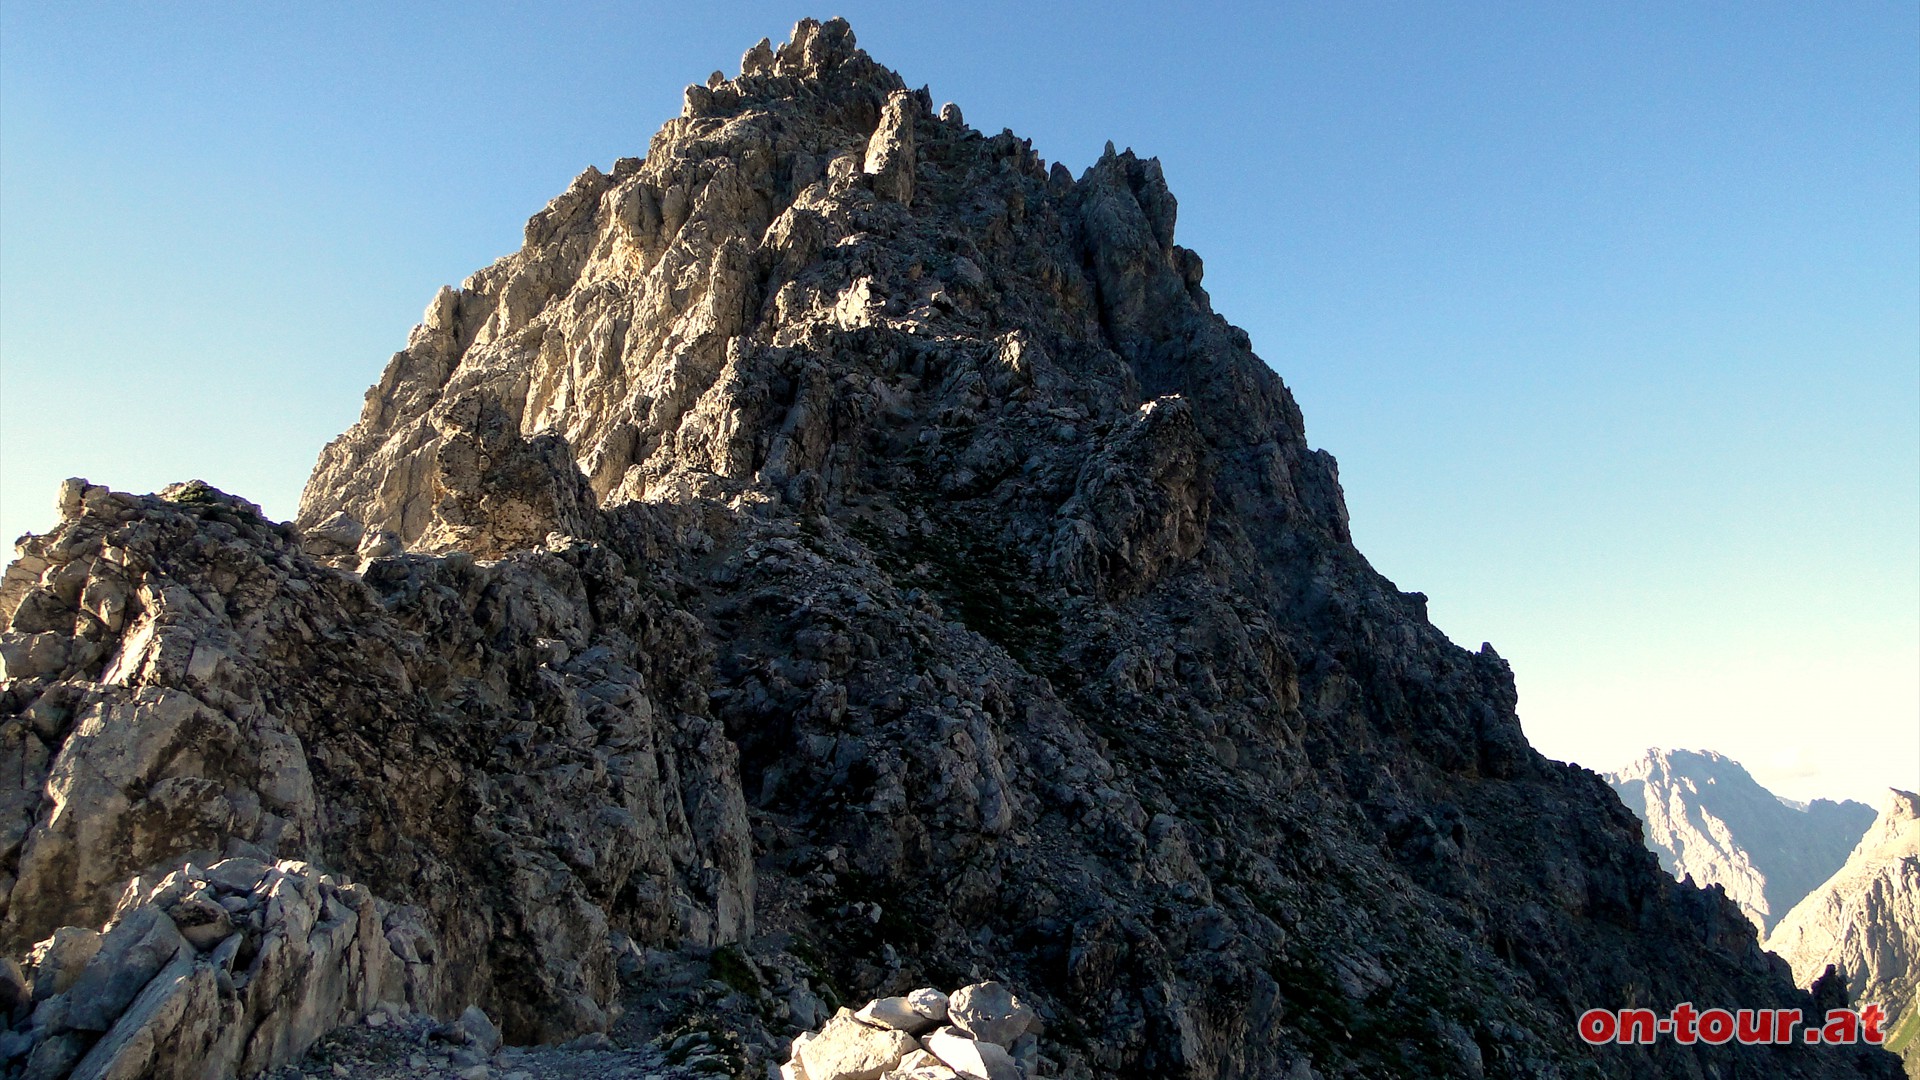 Der Aufstieg über den Grat ist schwierig (Alpine Erfahrung, Trittsicherheit und Schwindelfreiheit - leichte Kletterei).